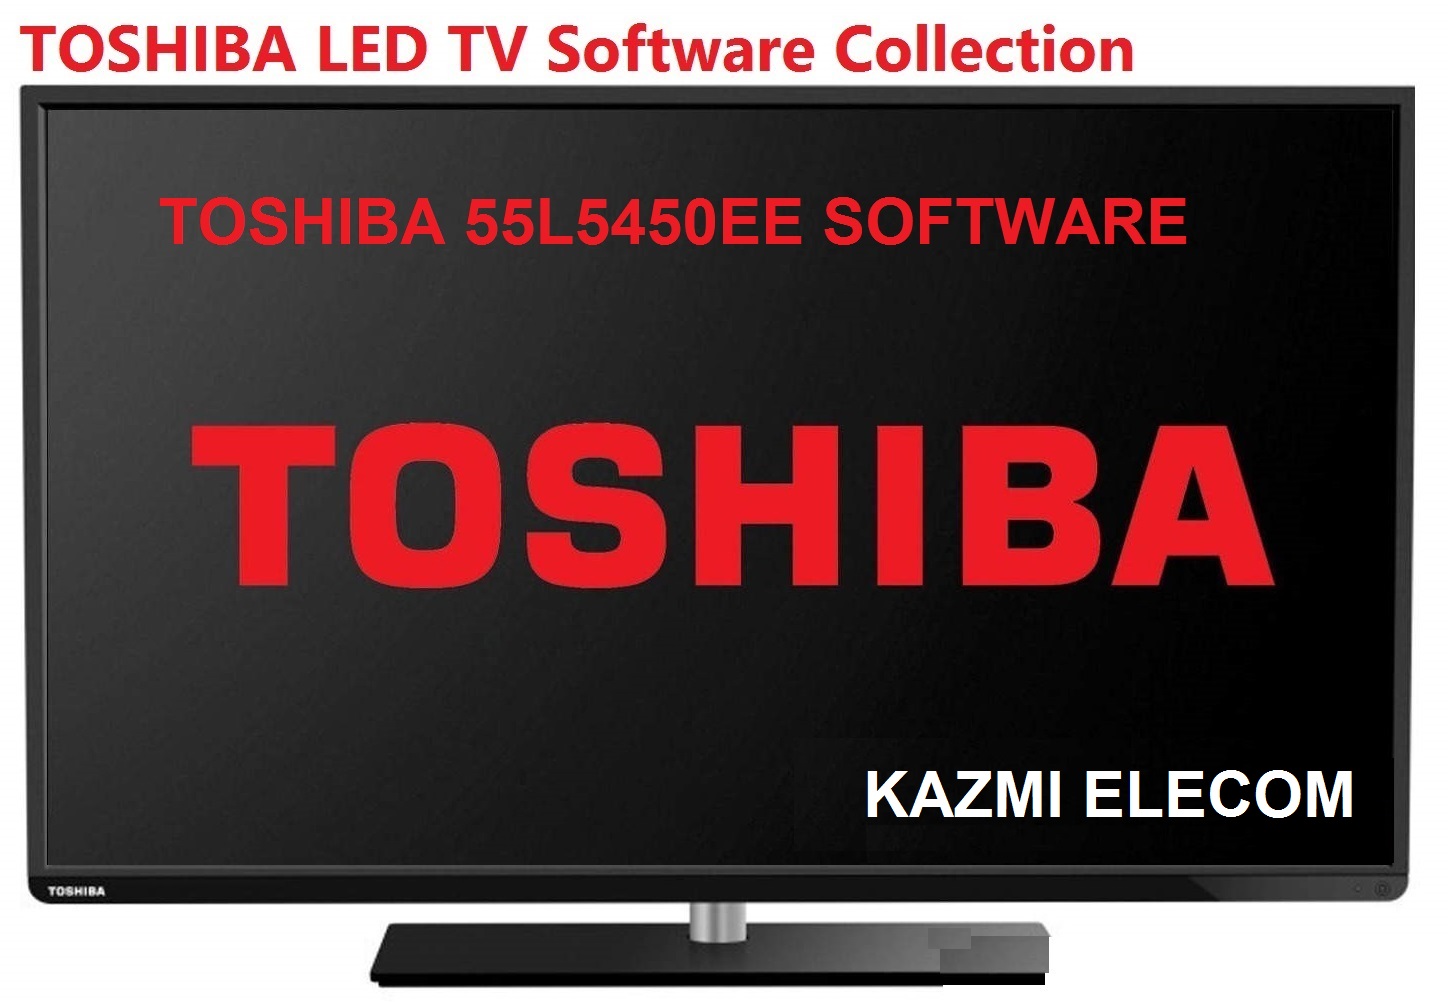 Toshiba 55L5450Ee